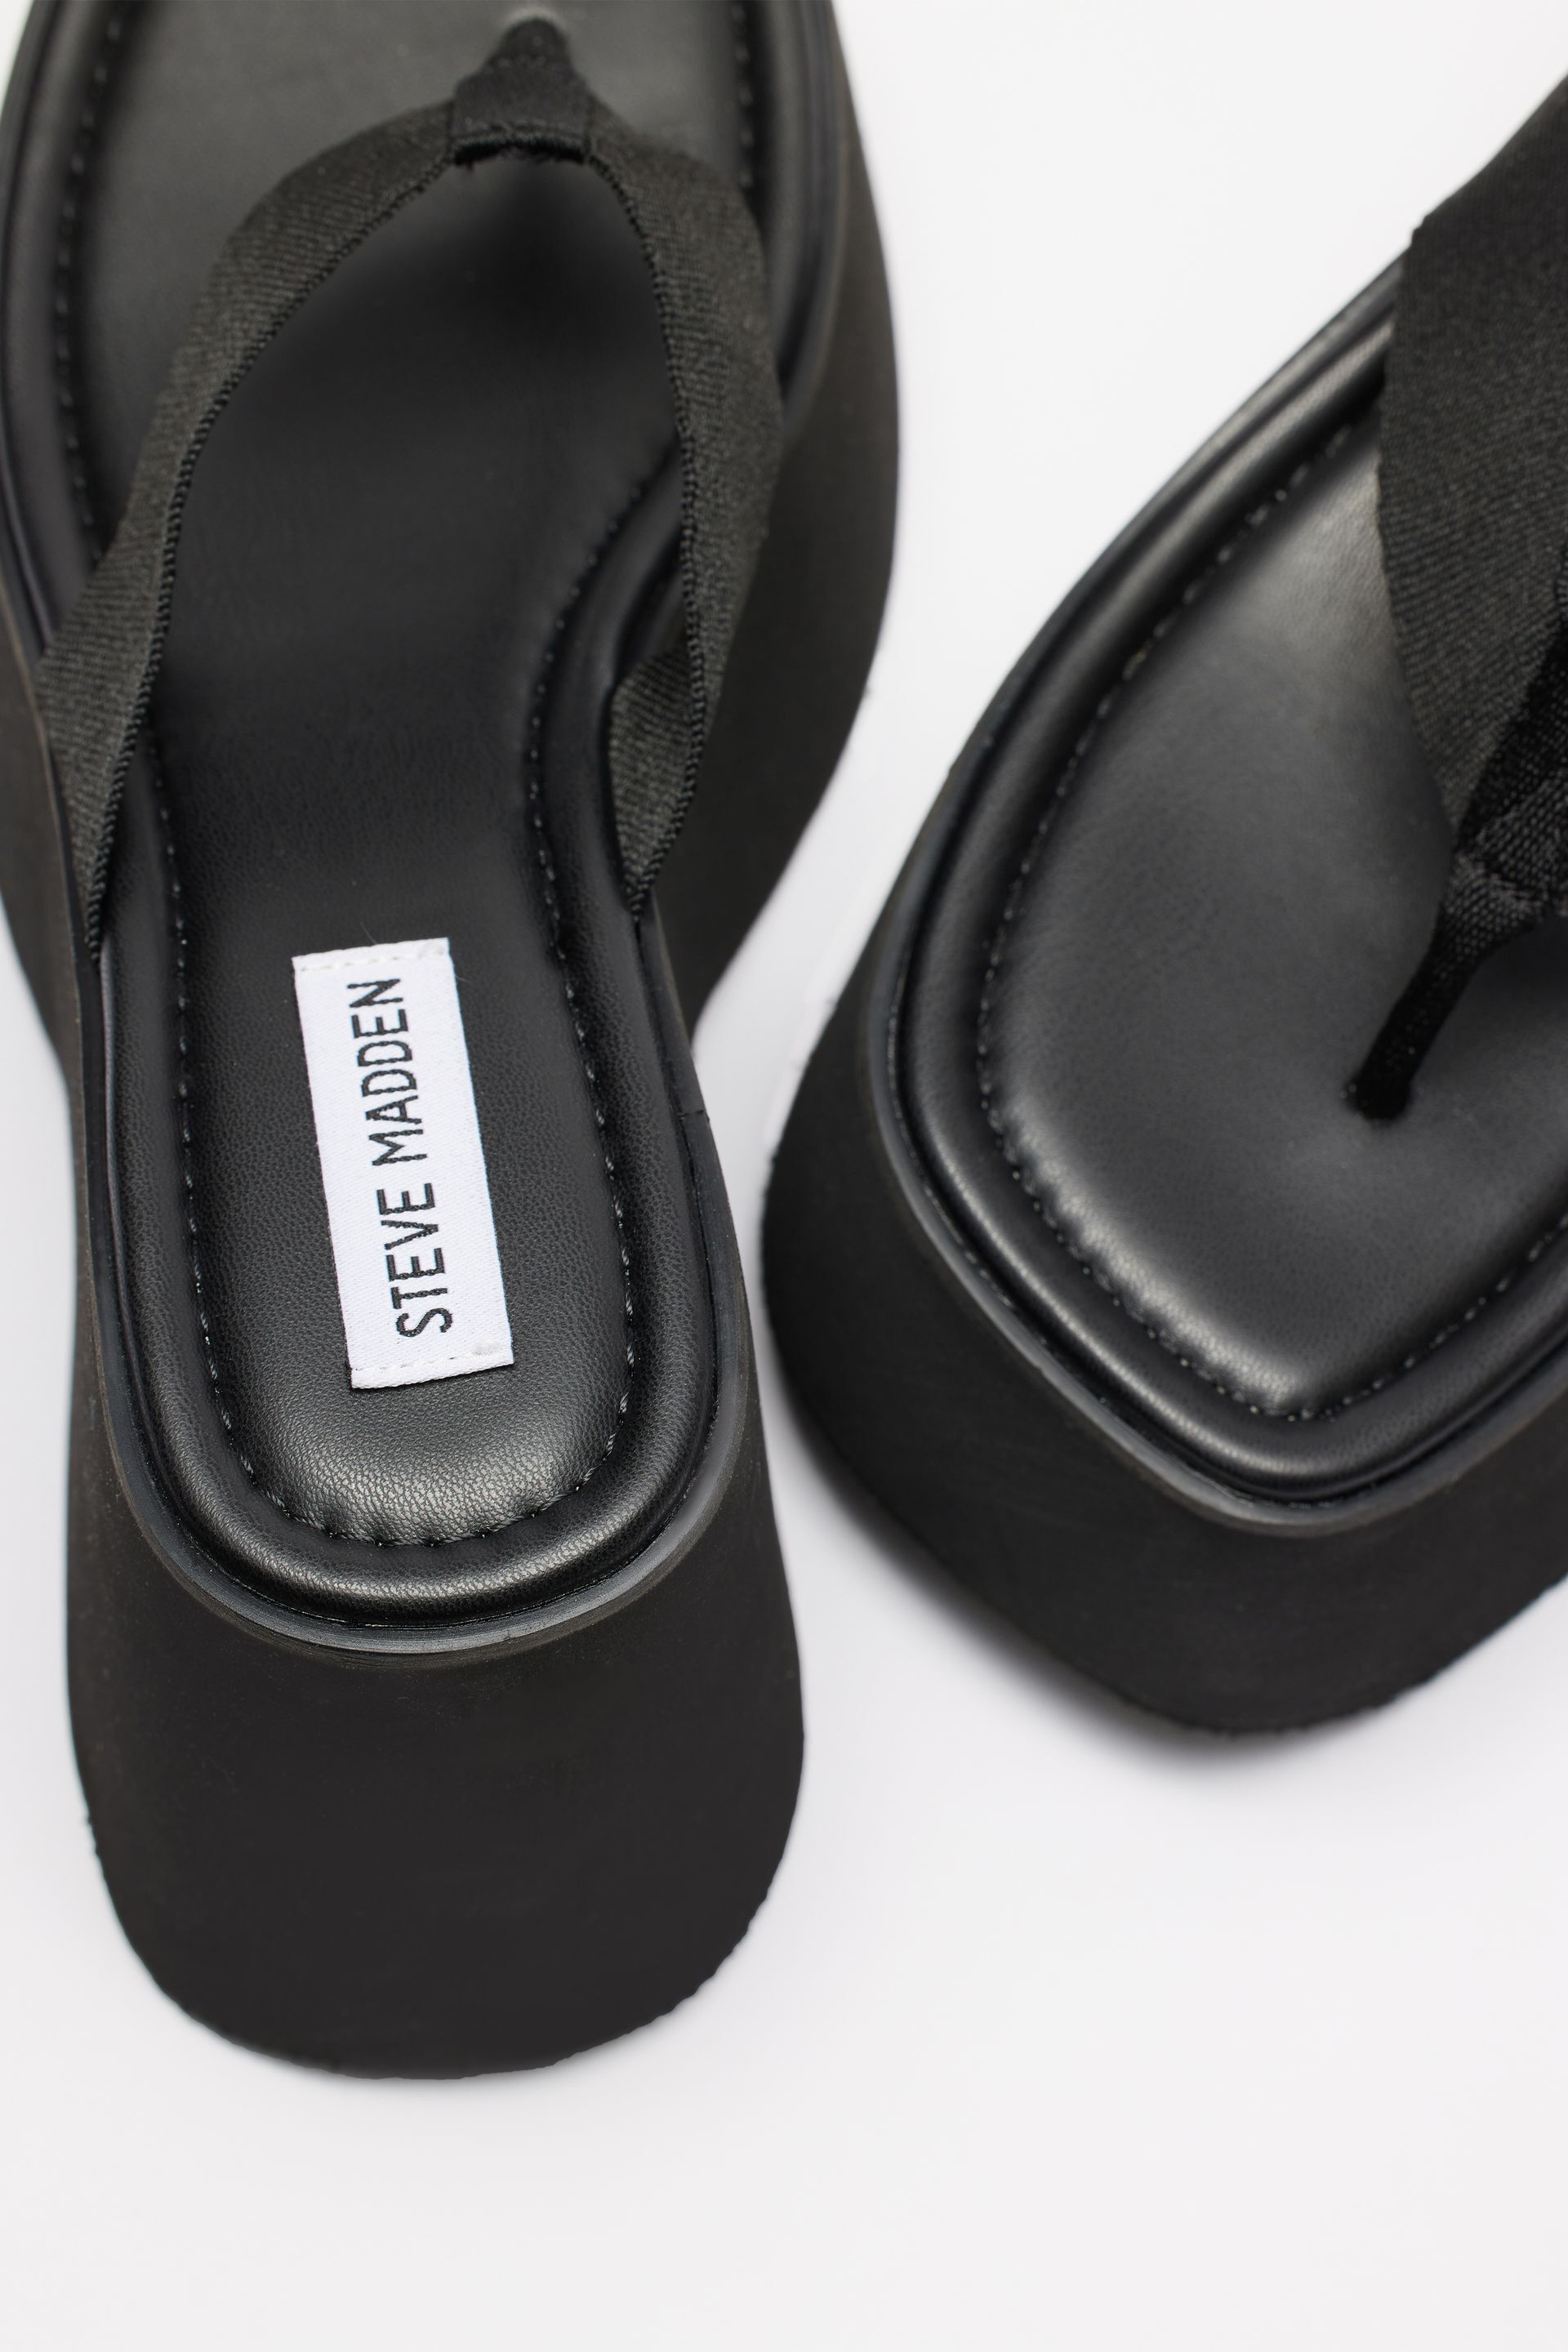 STEVE MADDEN Gwen Platform Sandal